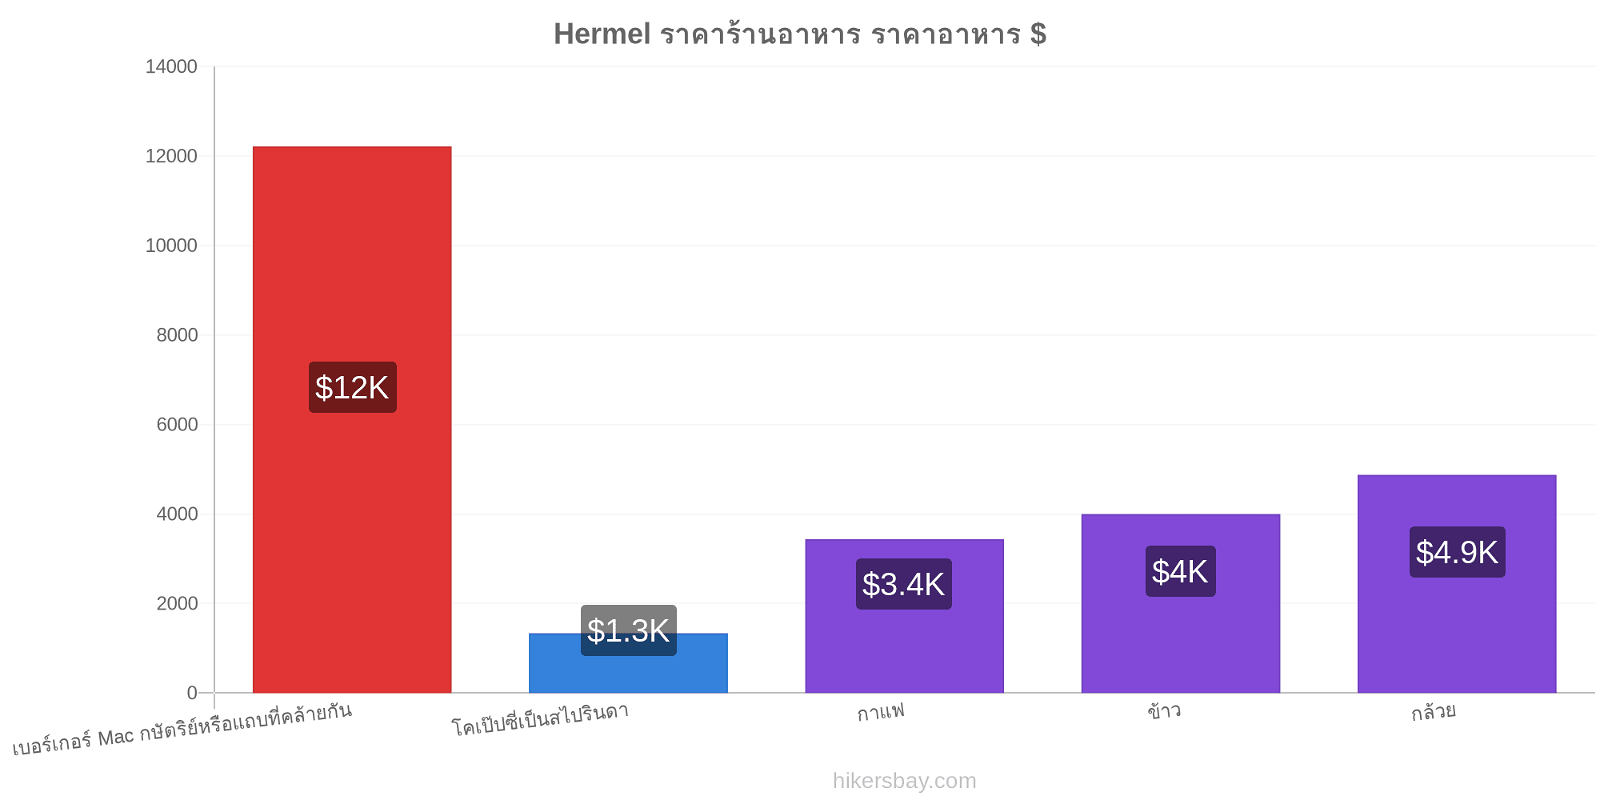 Hermel การเปลี่ยนแปลงราคา hikersbay.com